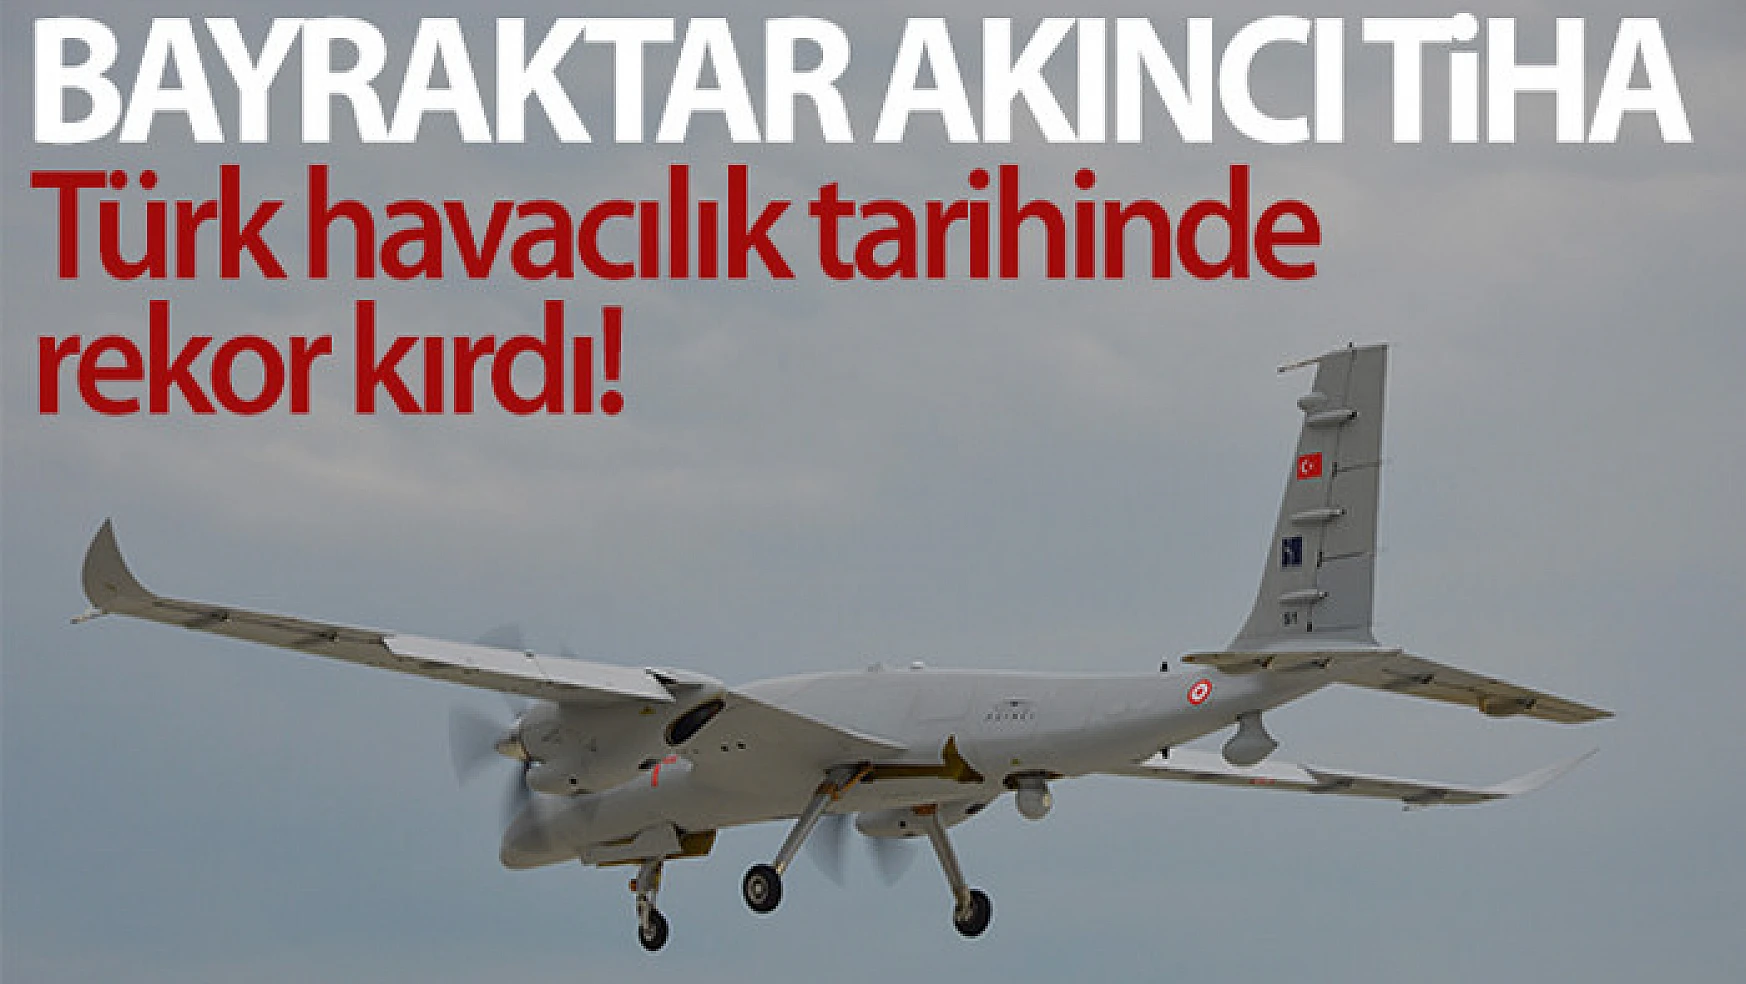 Bayraktar AKINCI TİHA Türk havacılık tarihinin irtifa rekorunu kırdı